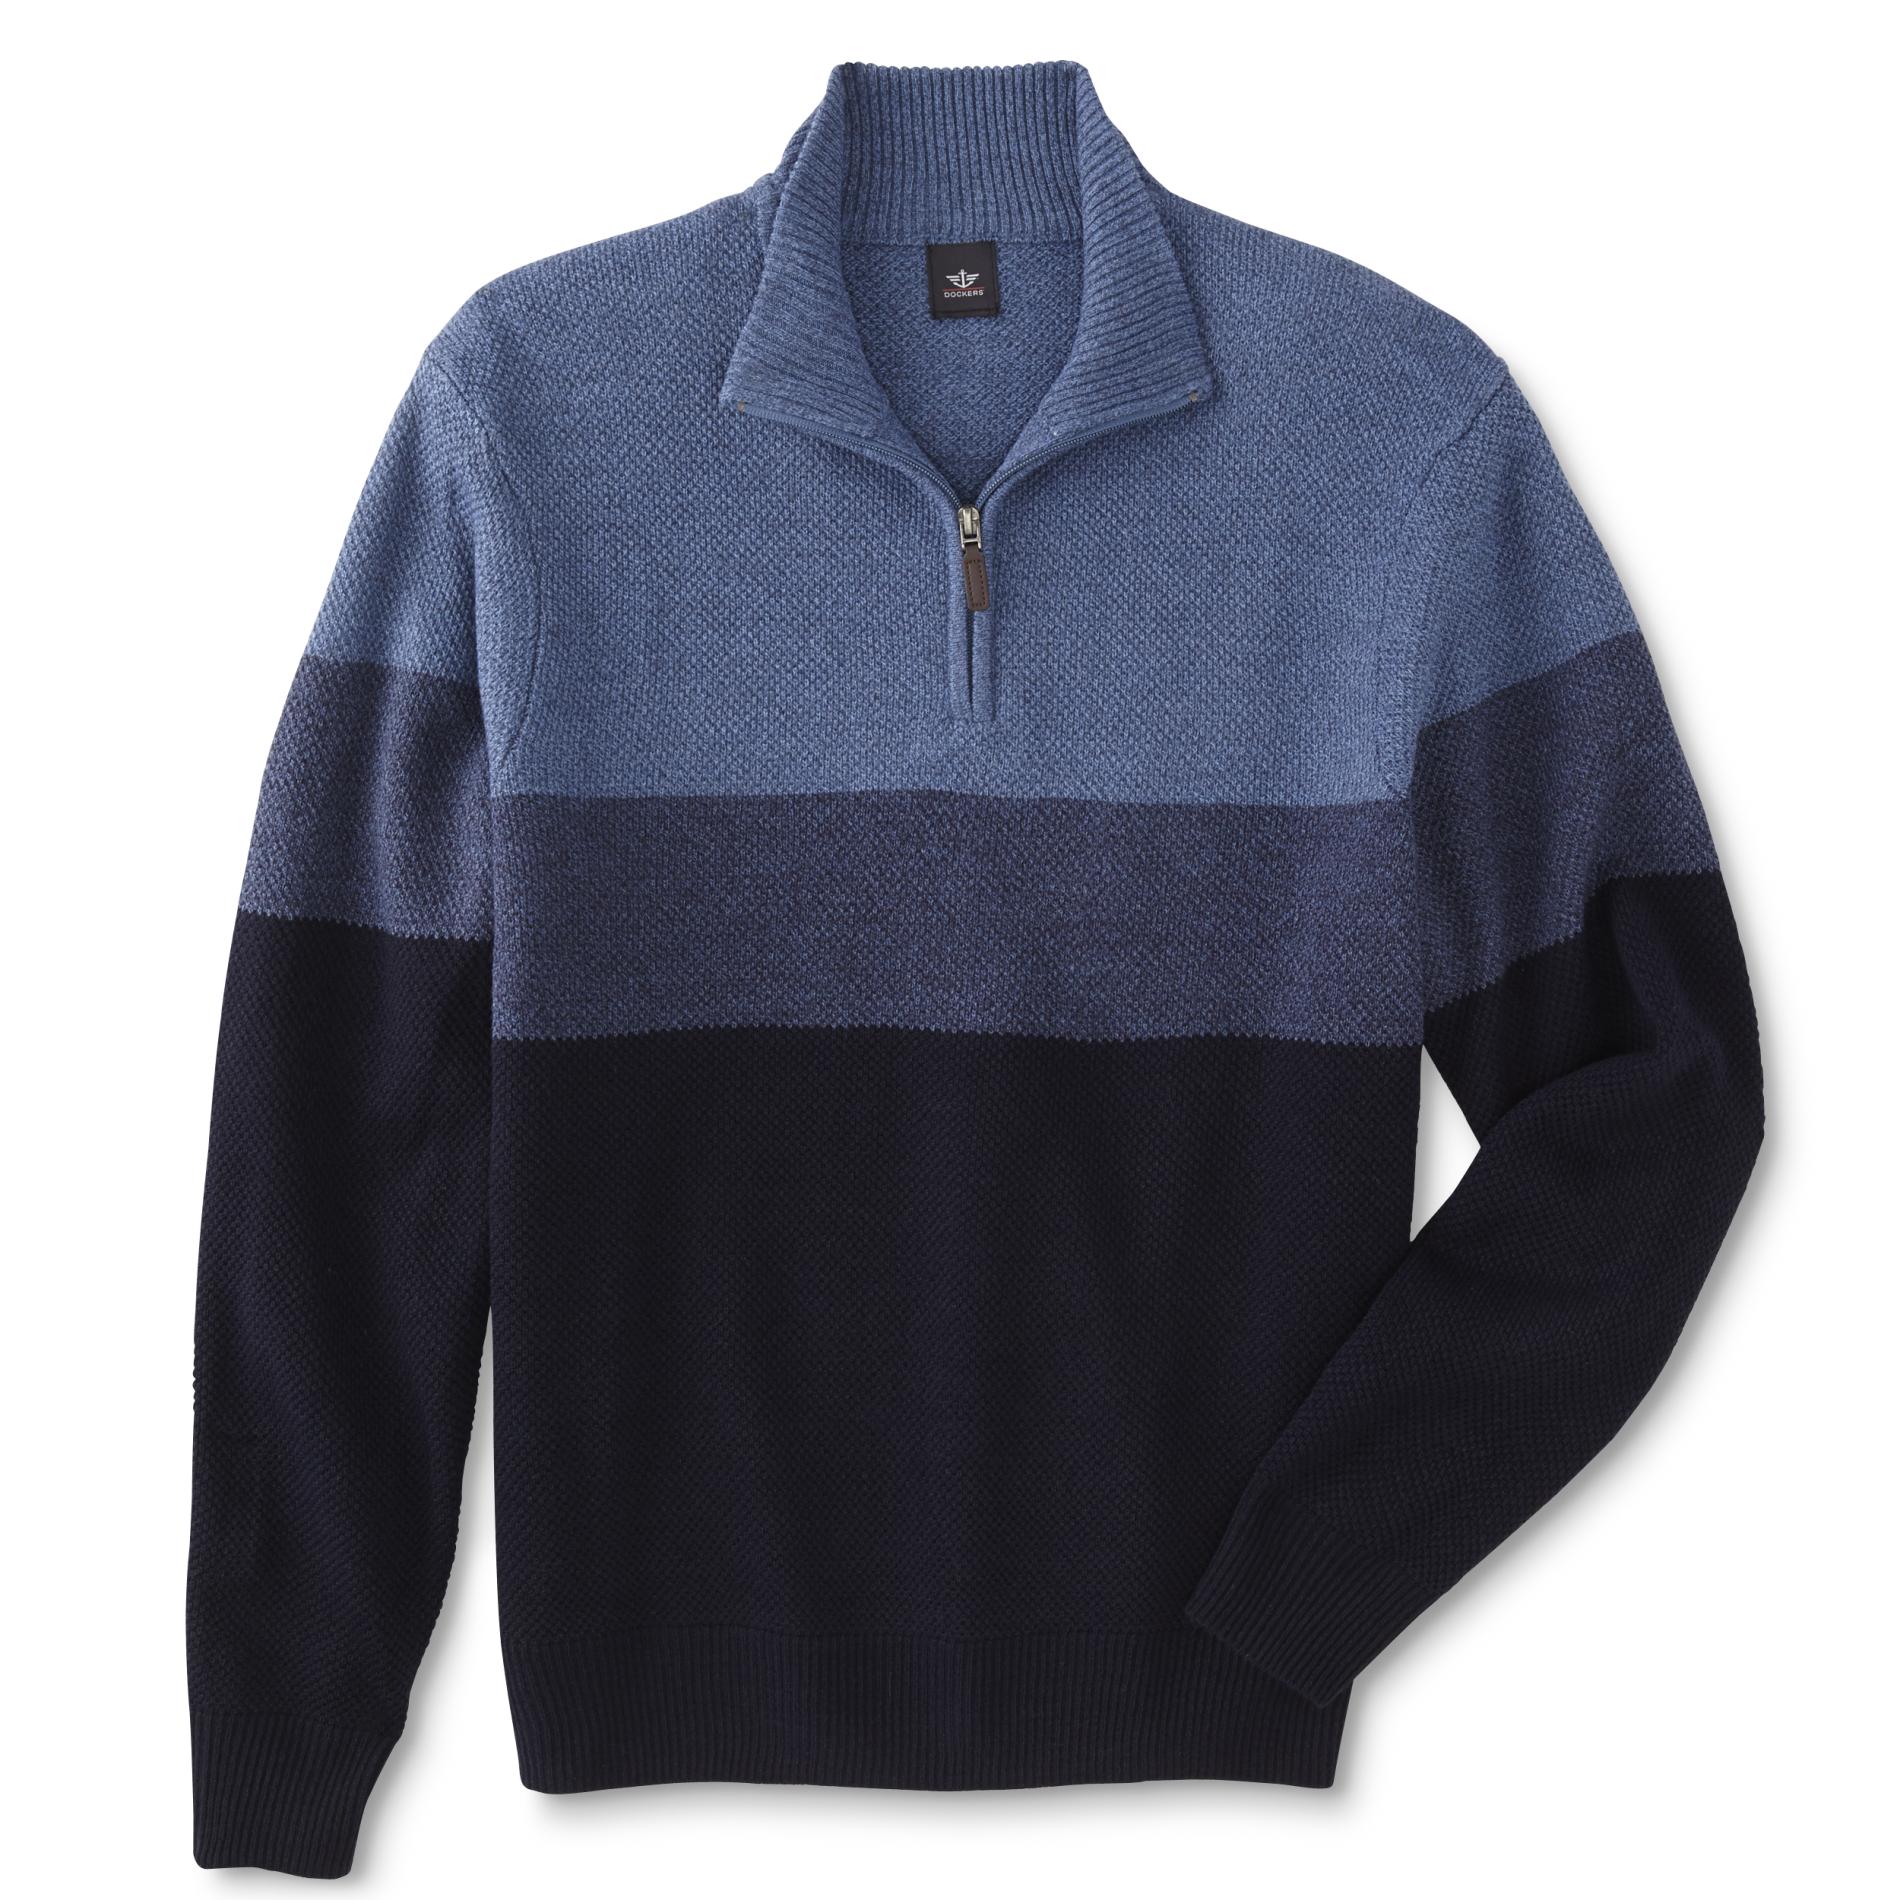 Dockers Men's Quarter-Zip Sweater - Colorblock